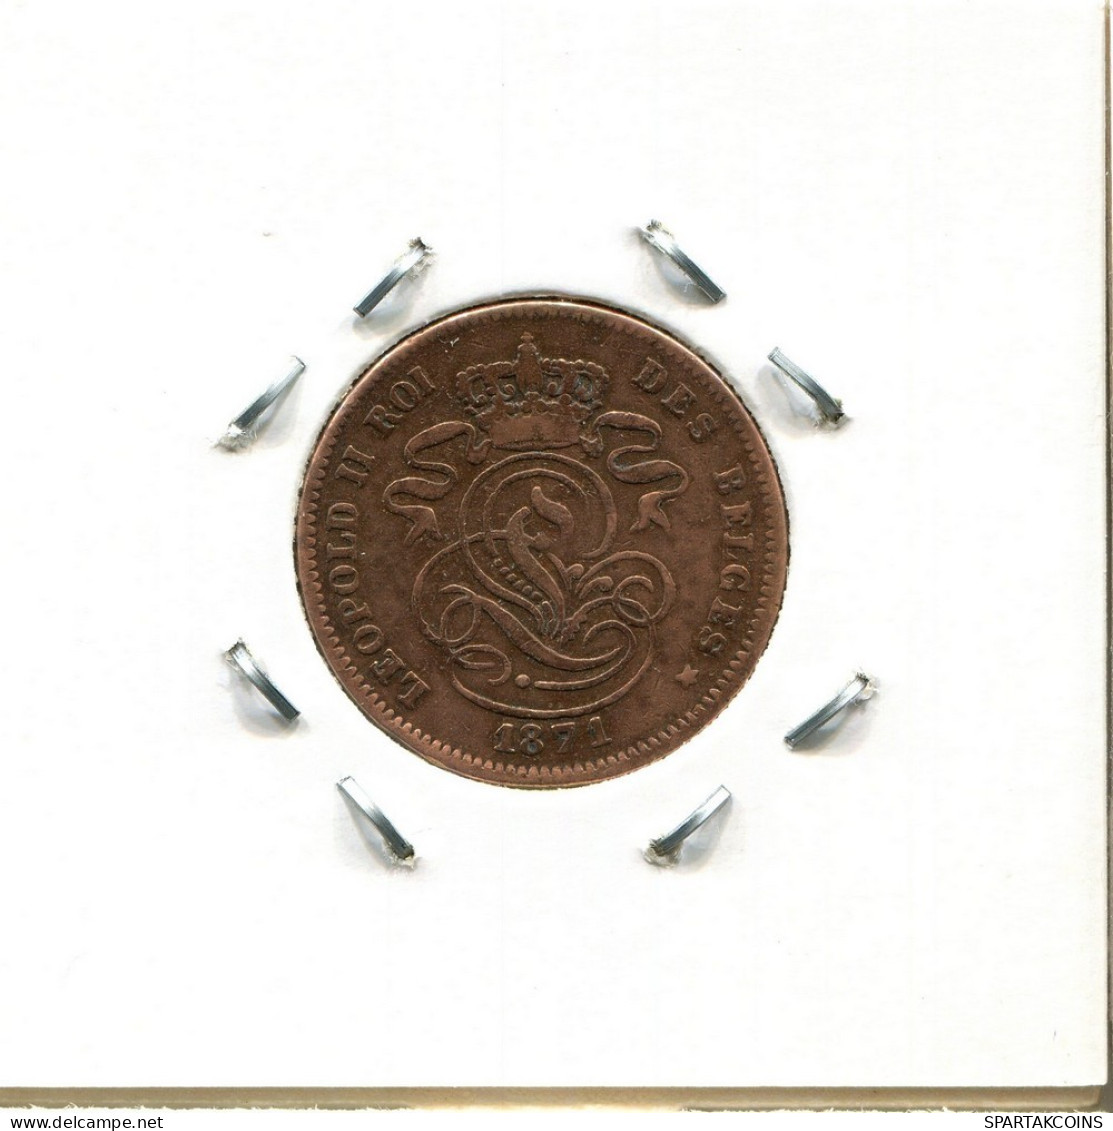 2 CENTIMES 1871 Französisch Text BELGIEN BELGIUM Münze #BA224.D.A - 2 Centimes